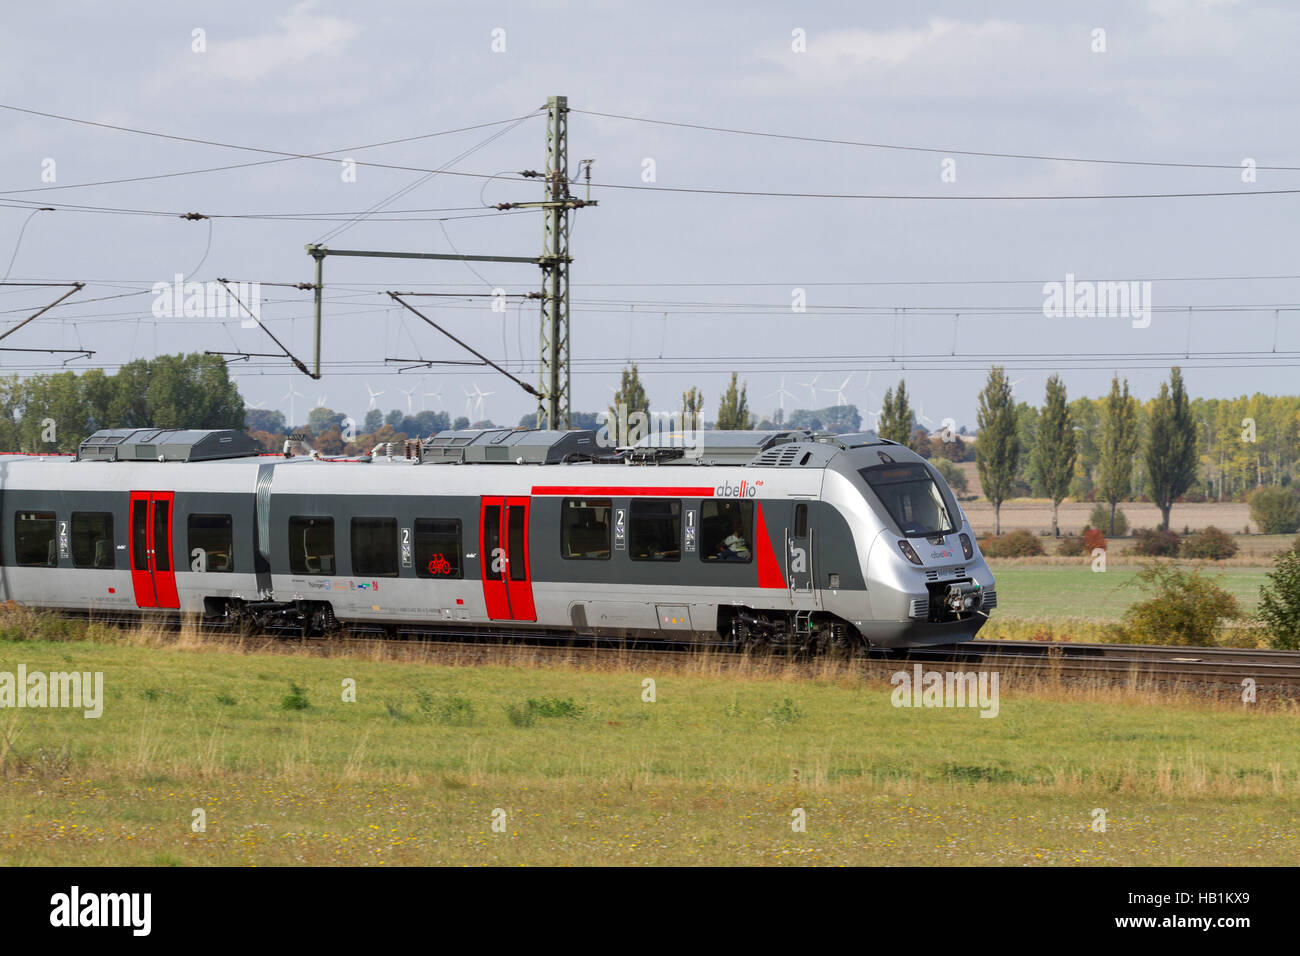 Abellio-Train in Thuringia Stock Photo